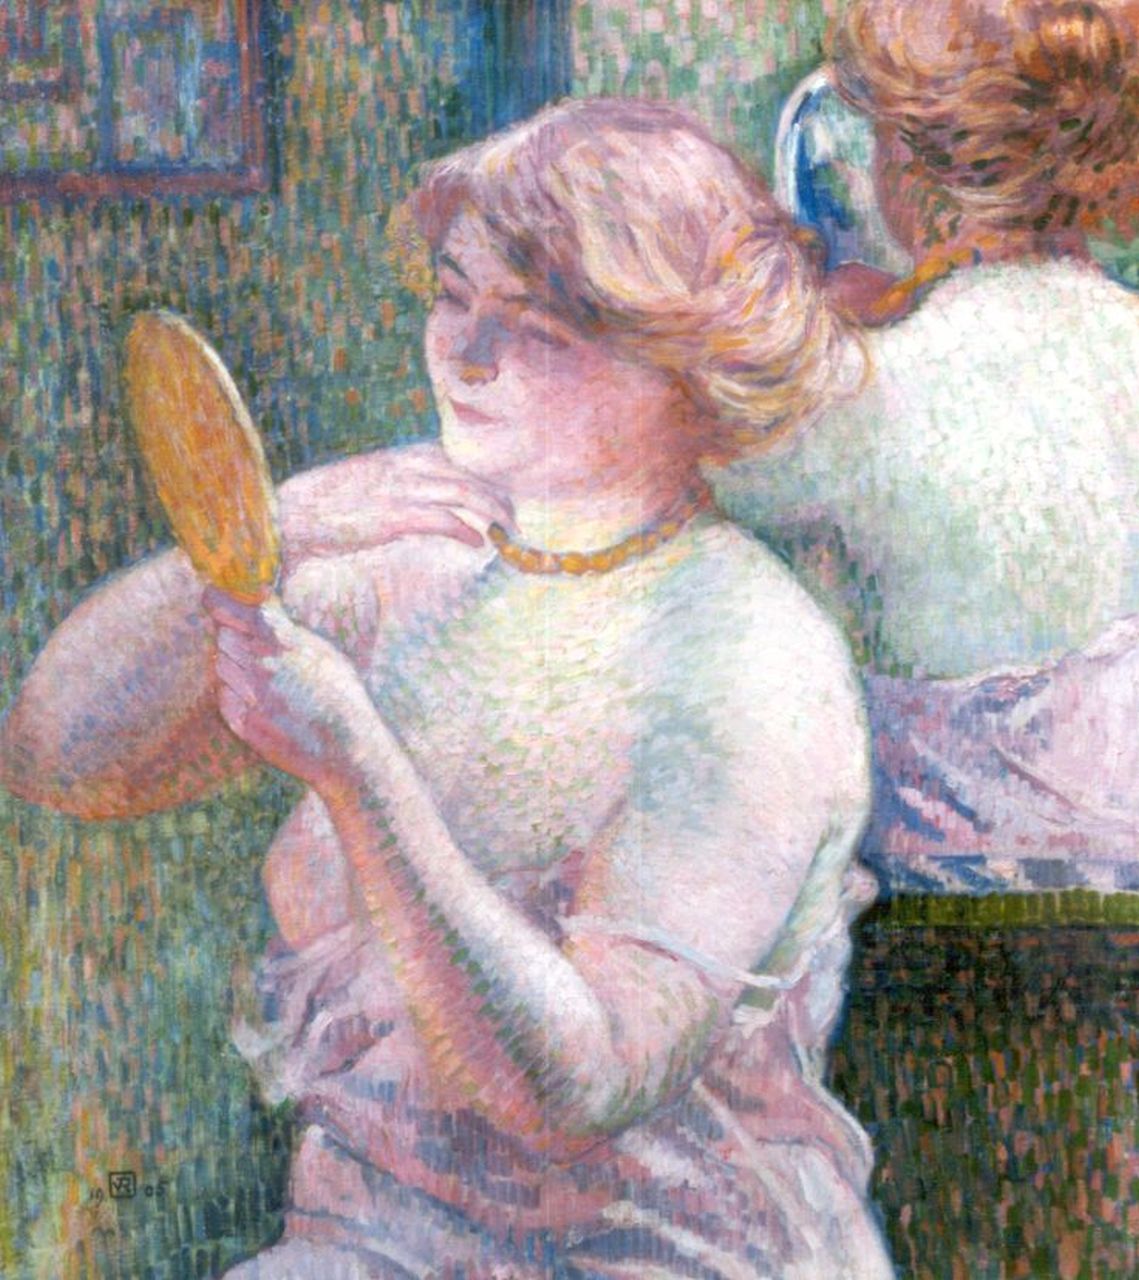 Rysselberghe Th. van | Théodore 'Théo' van Rysselberghe, Femme devant une glace, olieverf op doek 72,8 x 60,0 cm, gesigneerd linksonder monogram en gedateerd 1905